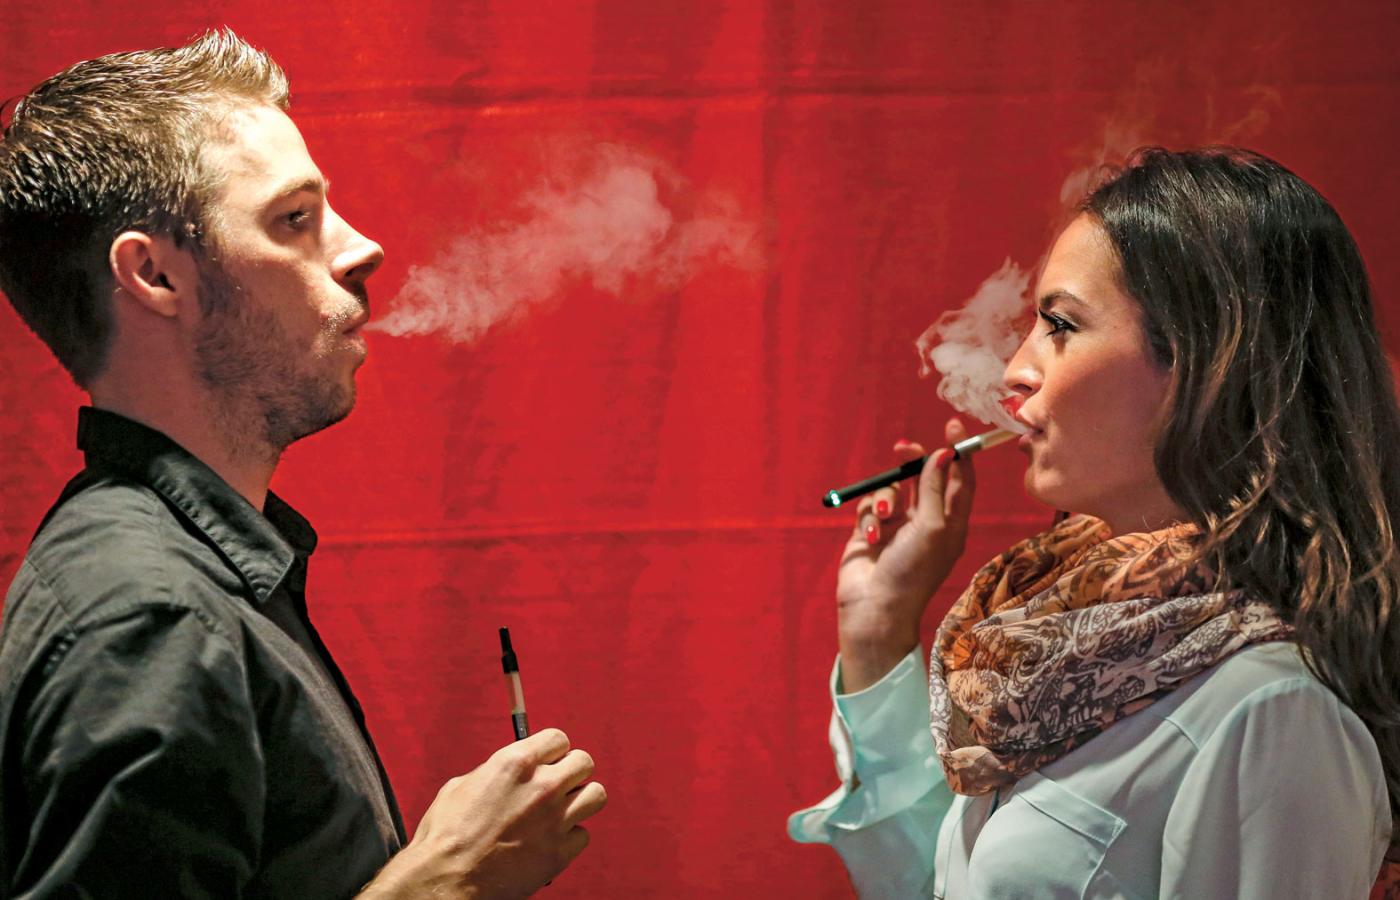 Ministerstwo Zdrowia przyznaje, że rozwój rynku e-papierosów w Polsce powoduje spadek konsumpcji wyrobów tytoniowych.